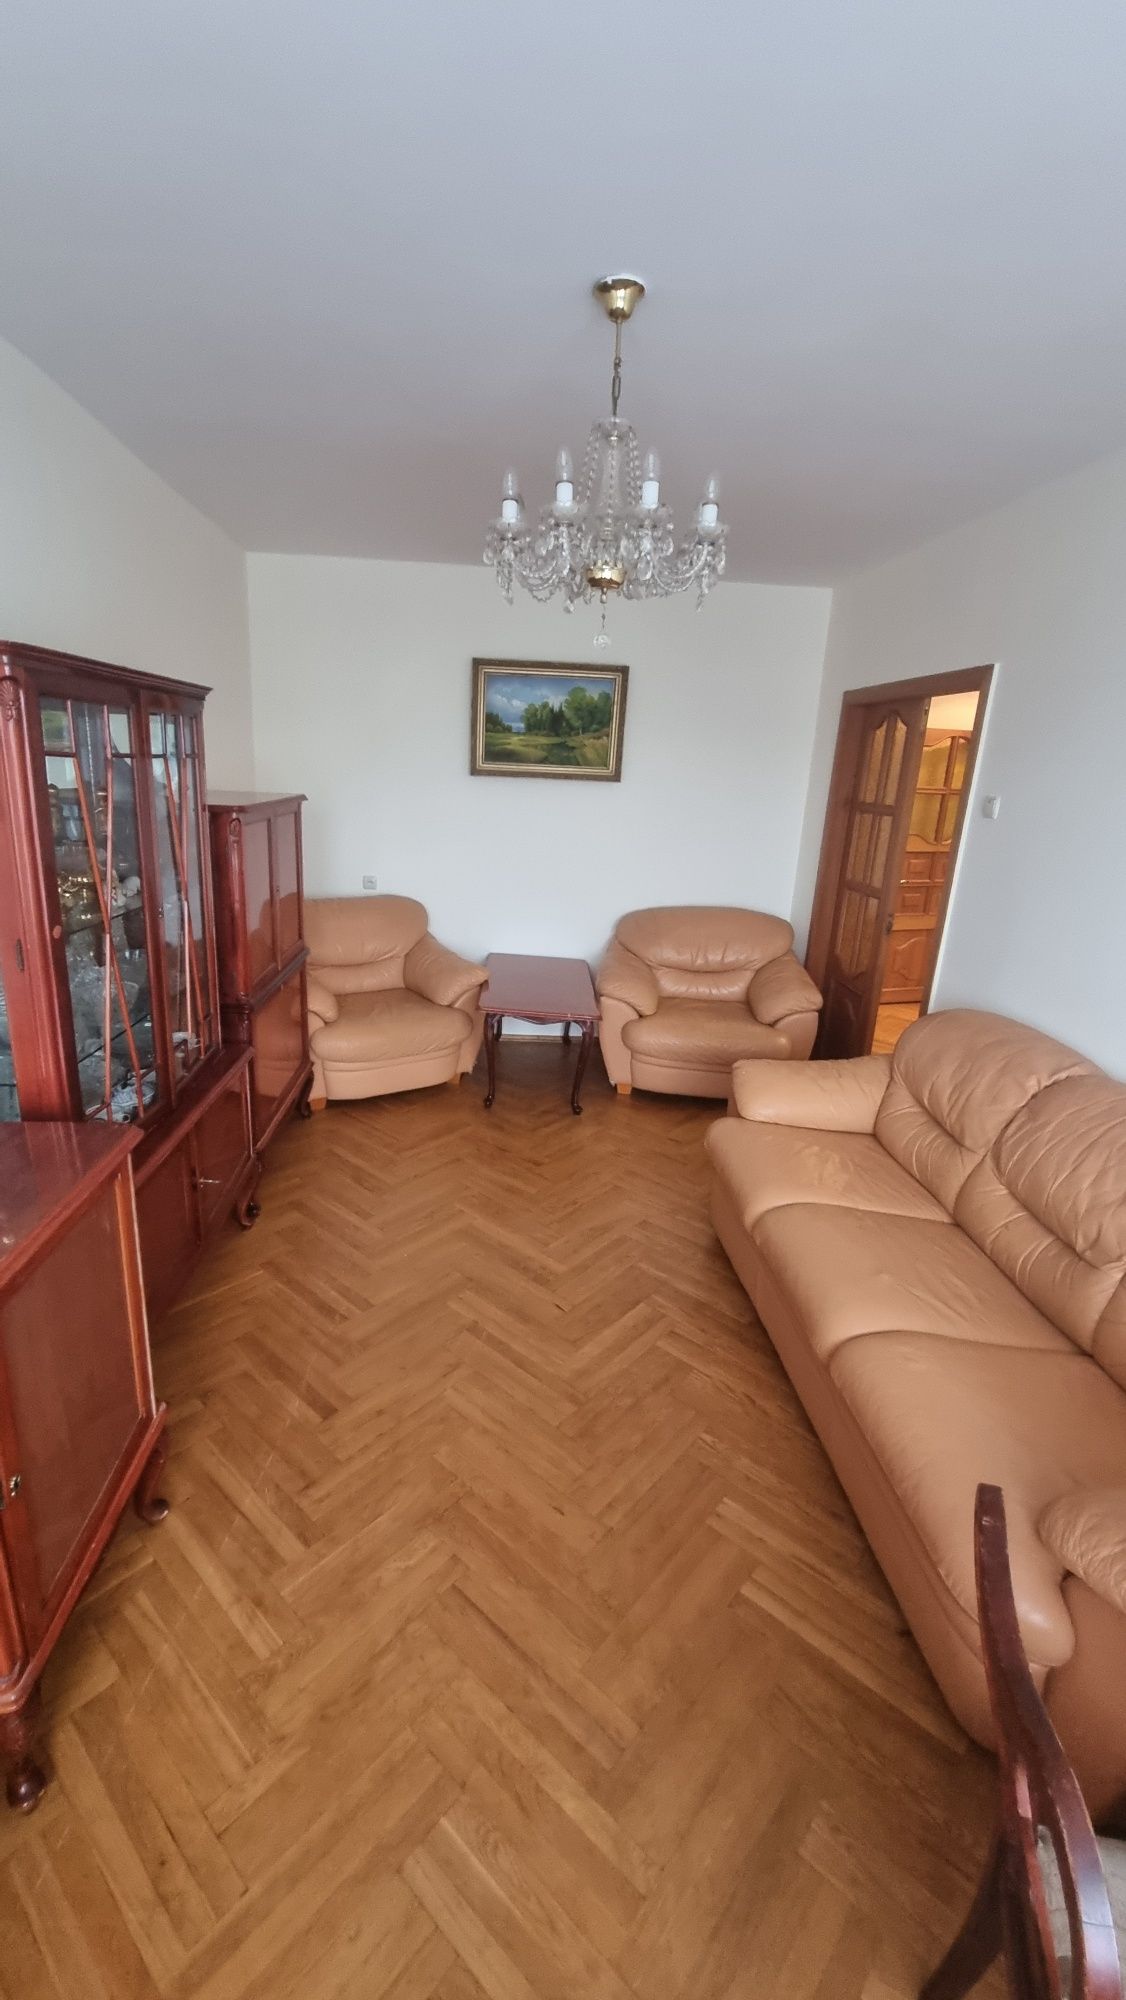 Продаж  3  ,4х кімнатної  квартири вул  Ватутіна